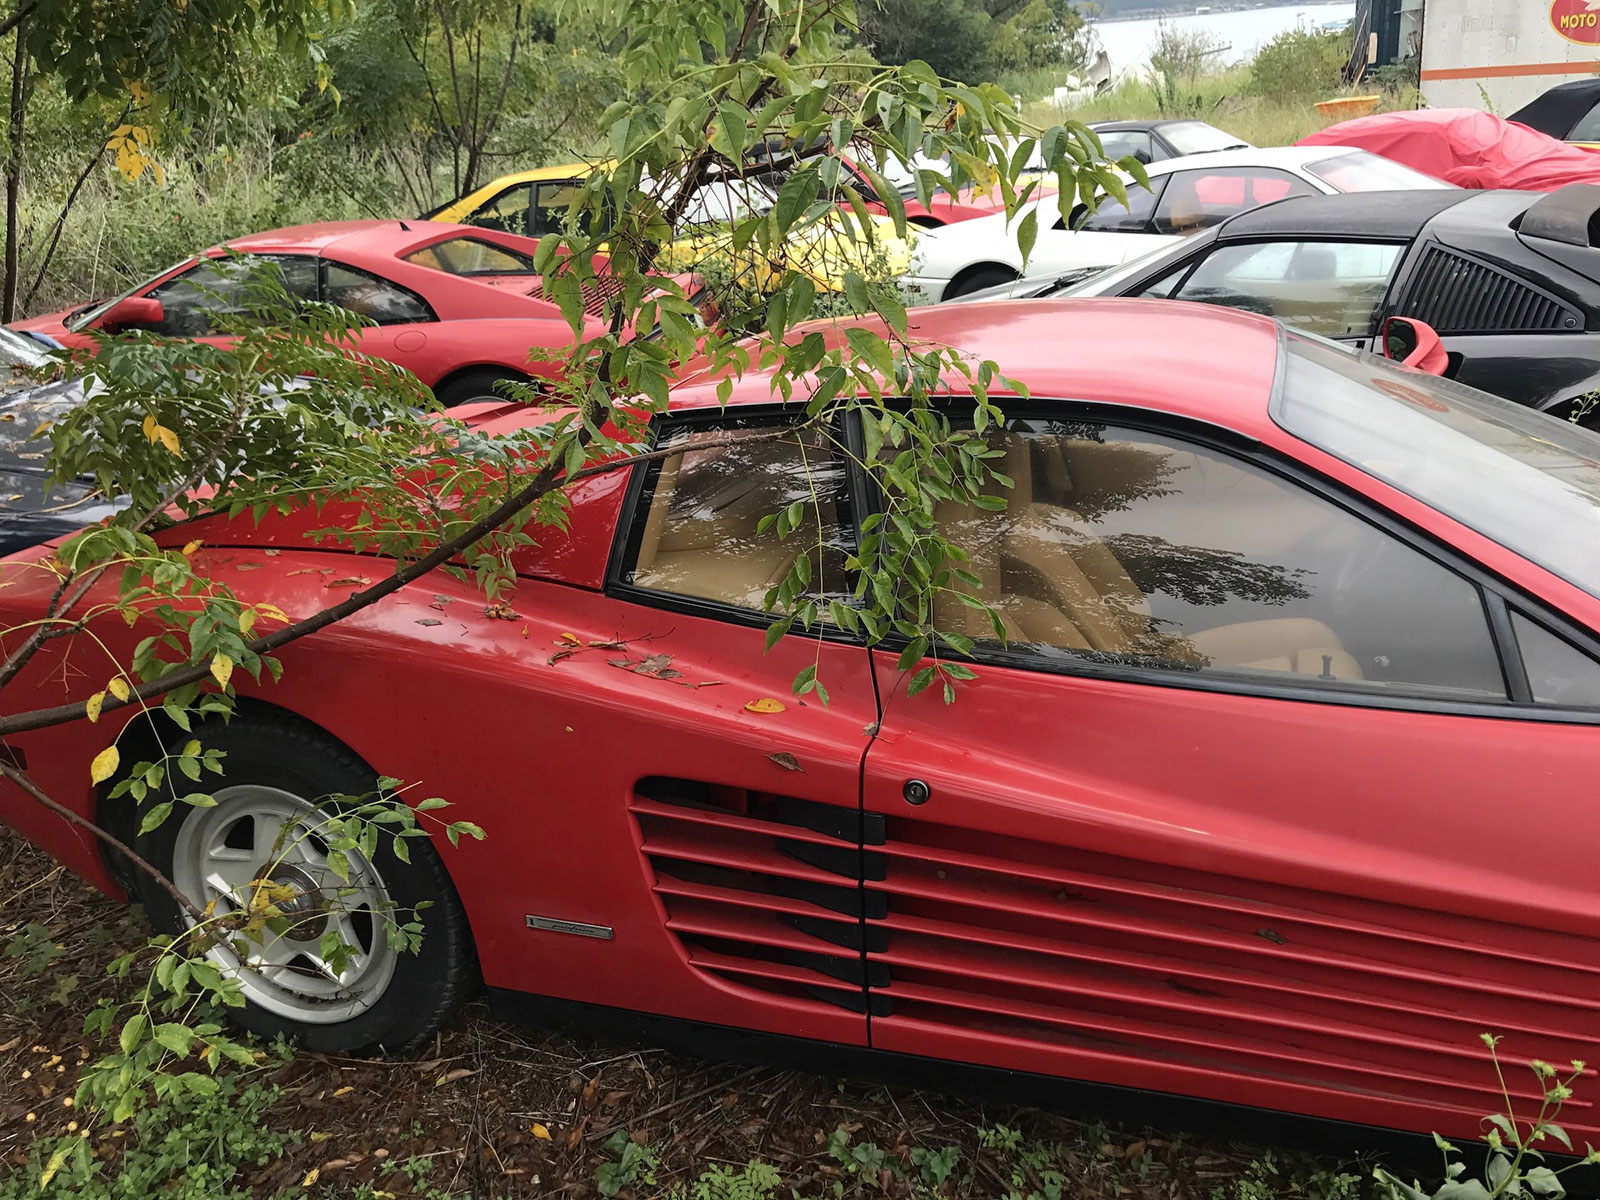 Phát hiện bộ sưu tập siêu xe Ferrari nằm phơi thân suốt 1 thập kỷ tại một bãi cỏ tại Mỹ a9